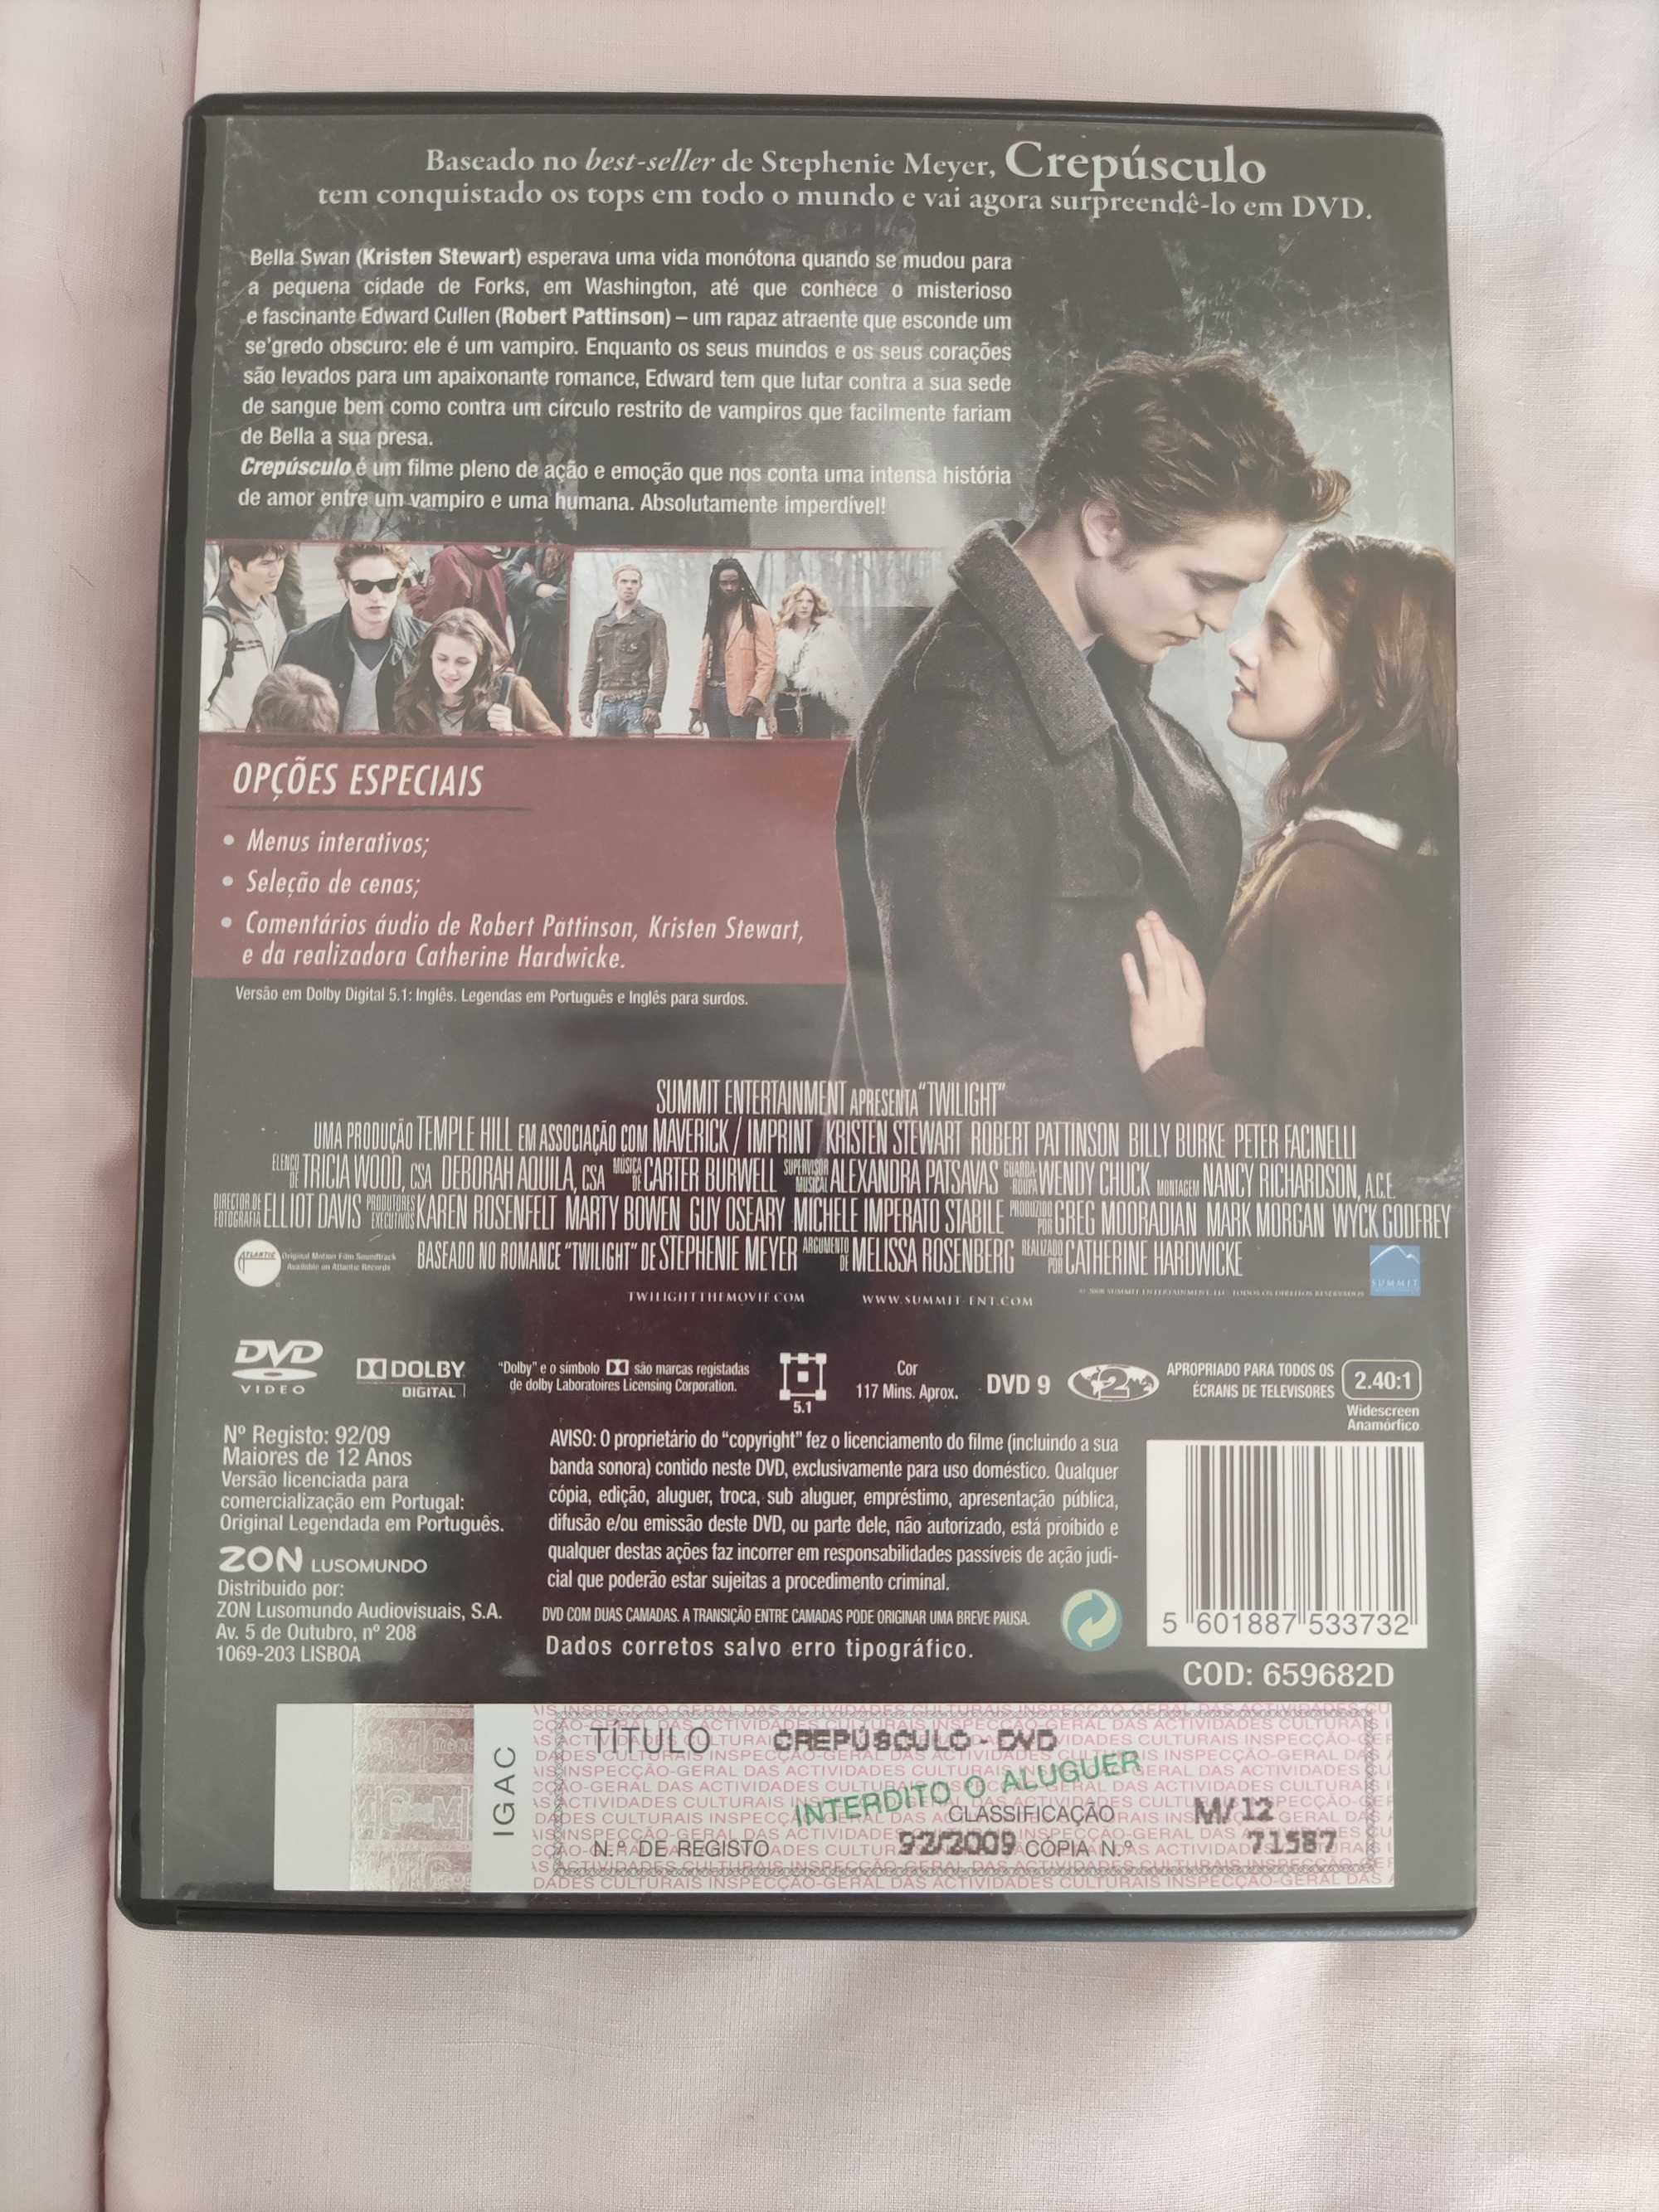 3 filmes da Saga Twilight em DVD